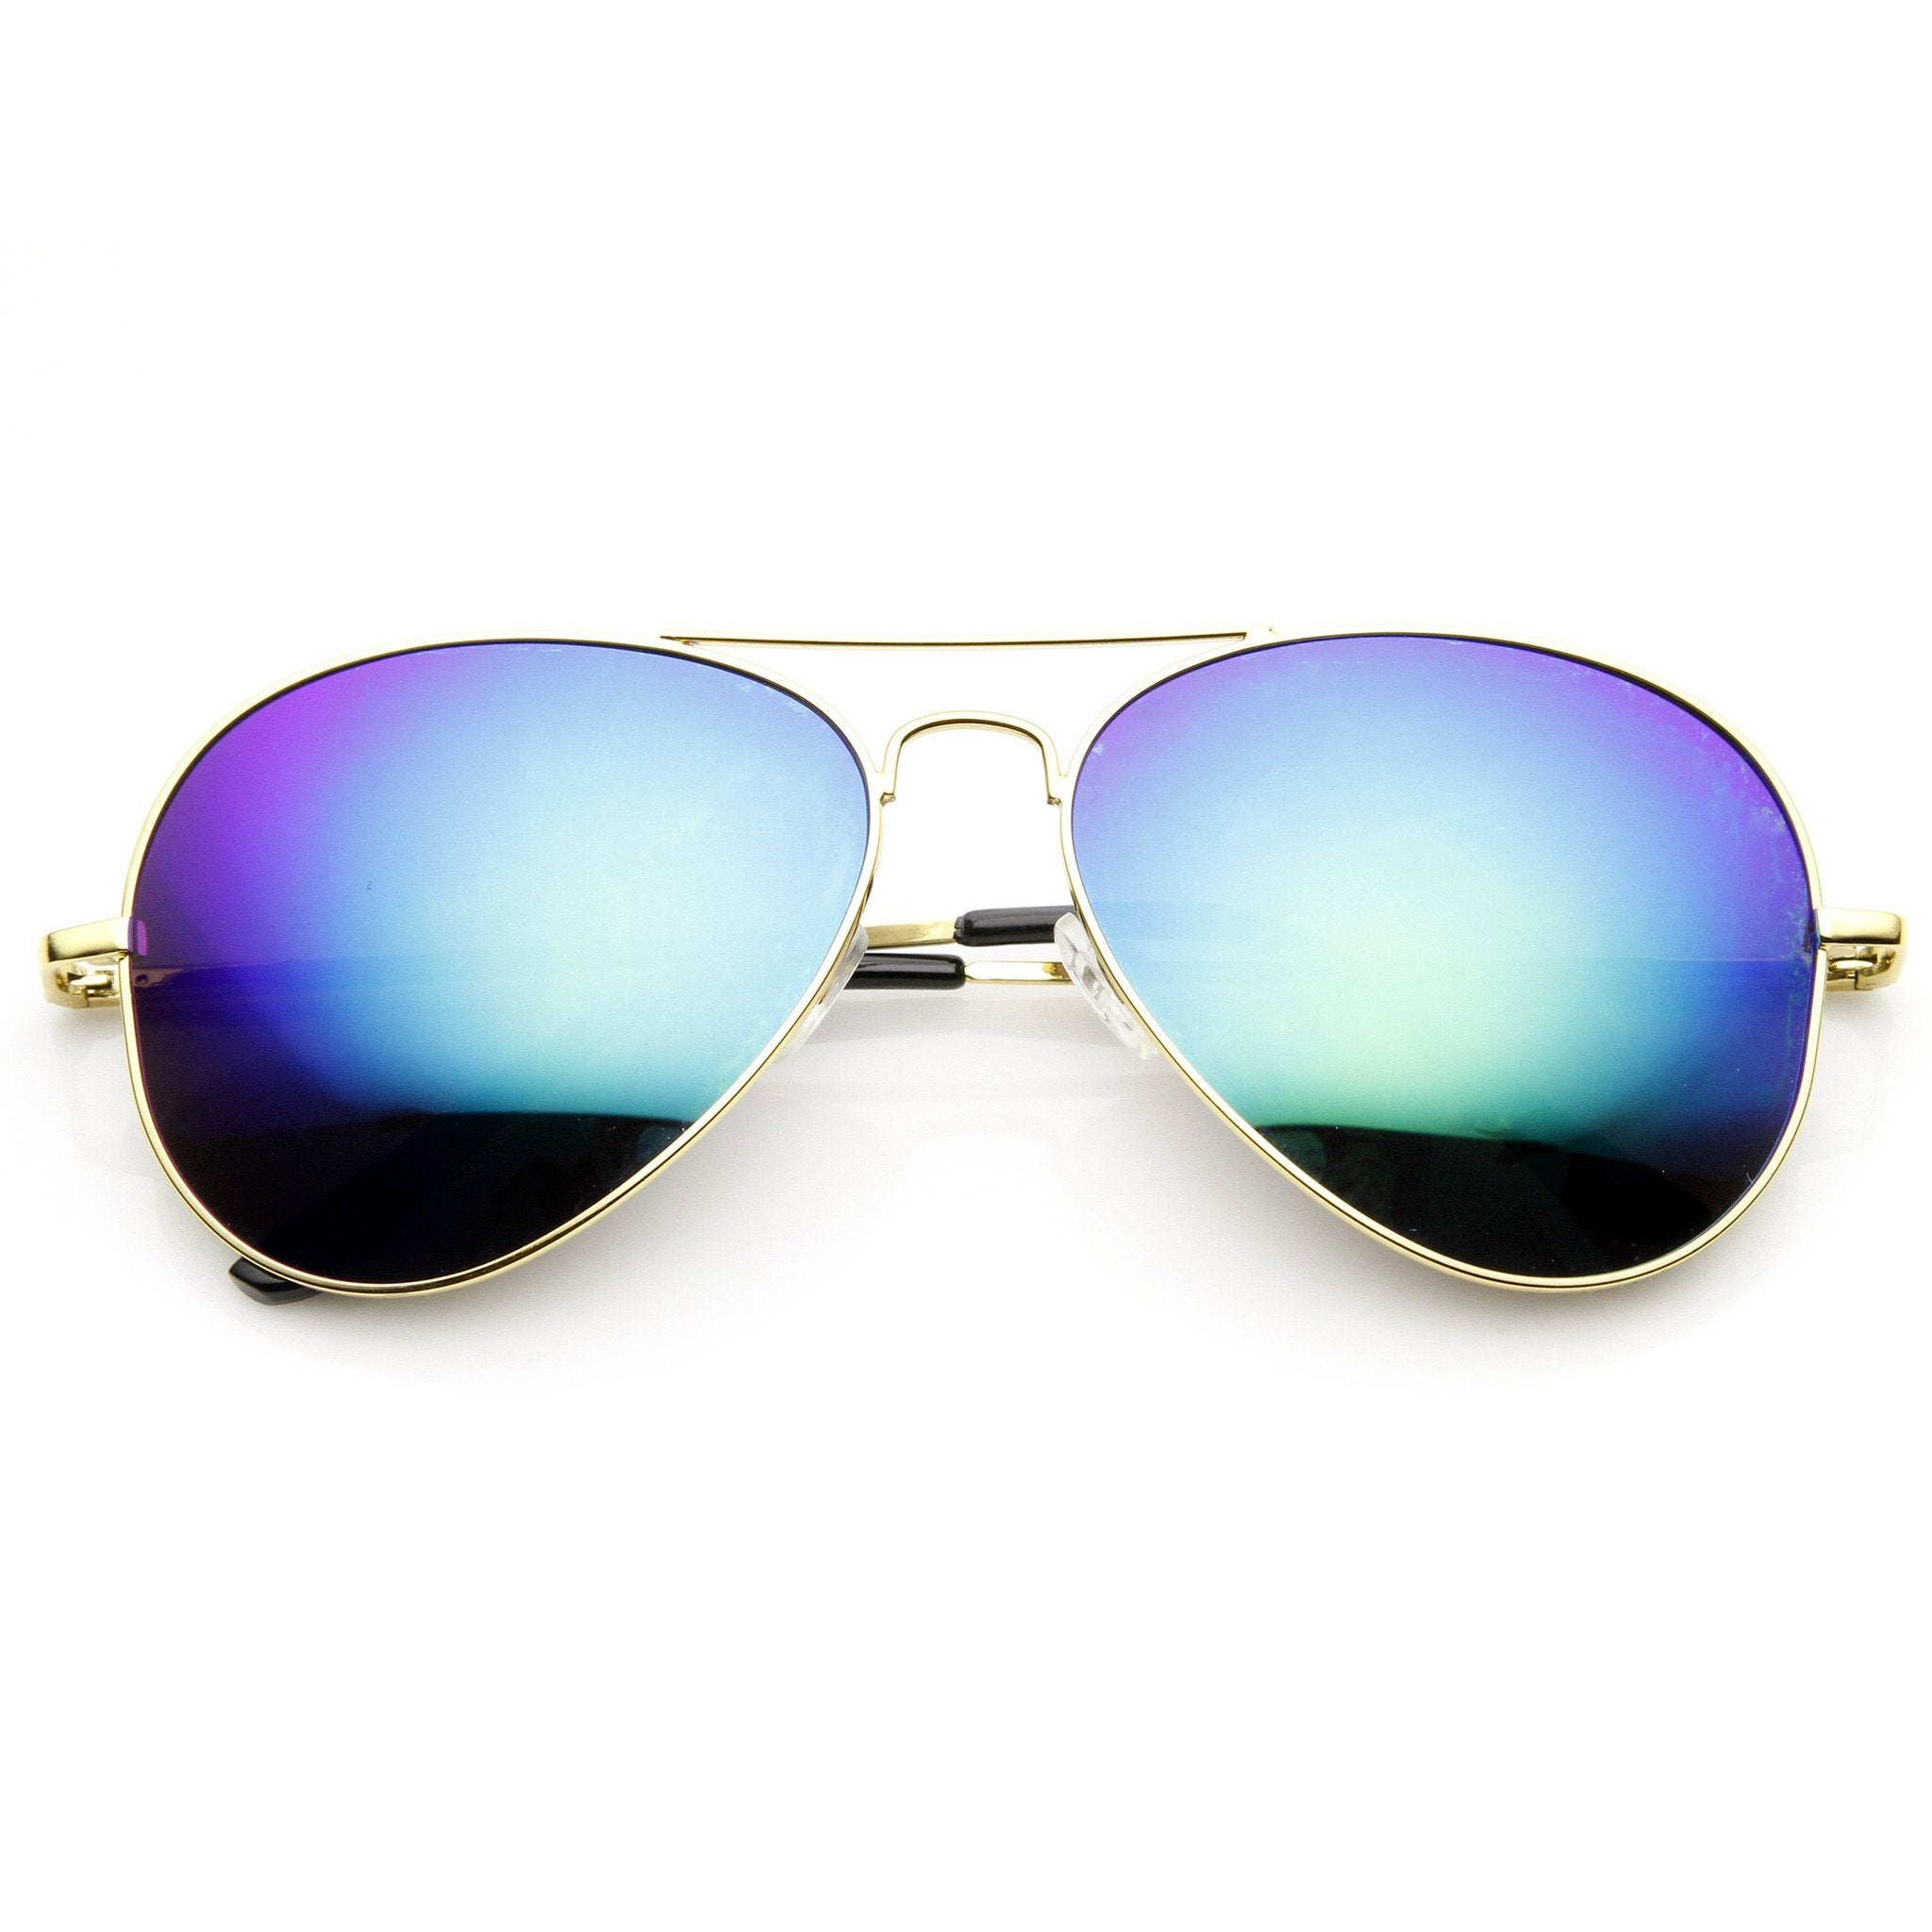 Sunglasses очки солнцезащитные. Солнцезащитные очки. Очки солнцезащитные радужные. Солнечные очки полупрозрачные. Солнцезащитные очки для фотошопа.